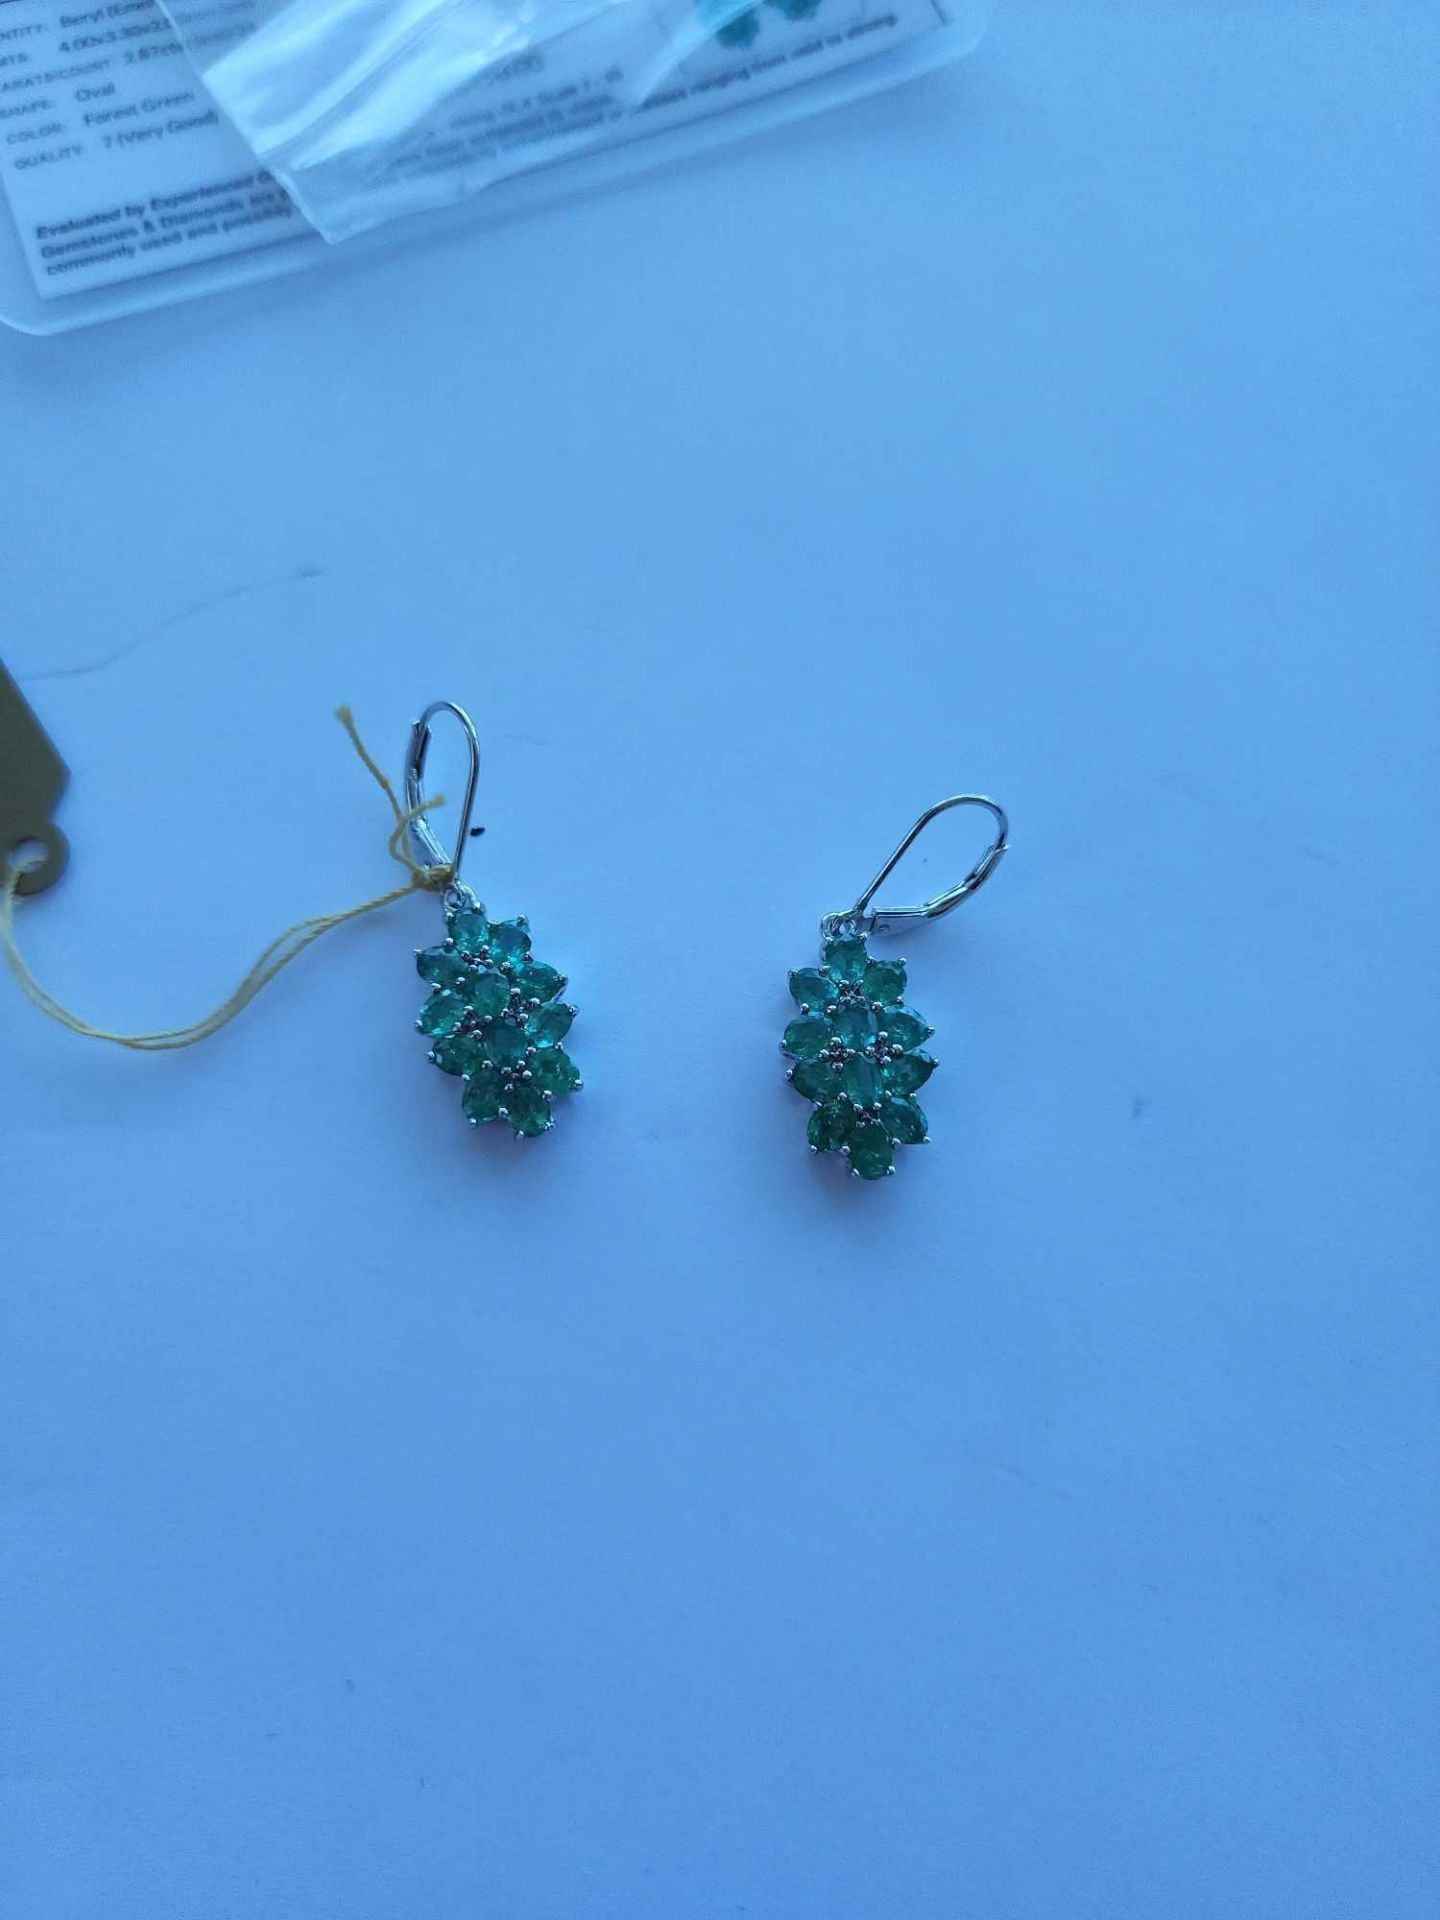 Beryl (Emerald) Earrings 2.87 ctw - Image 3 of 4